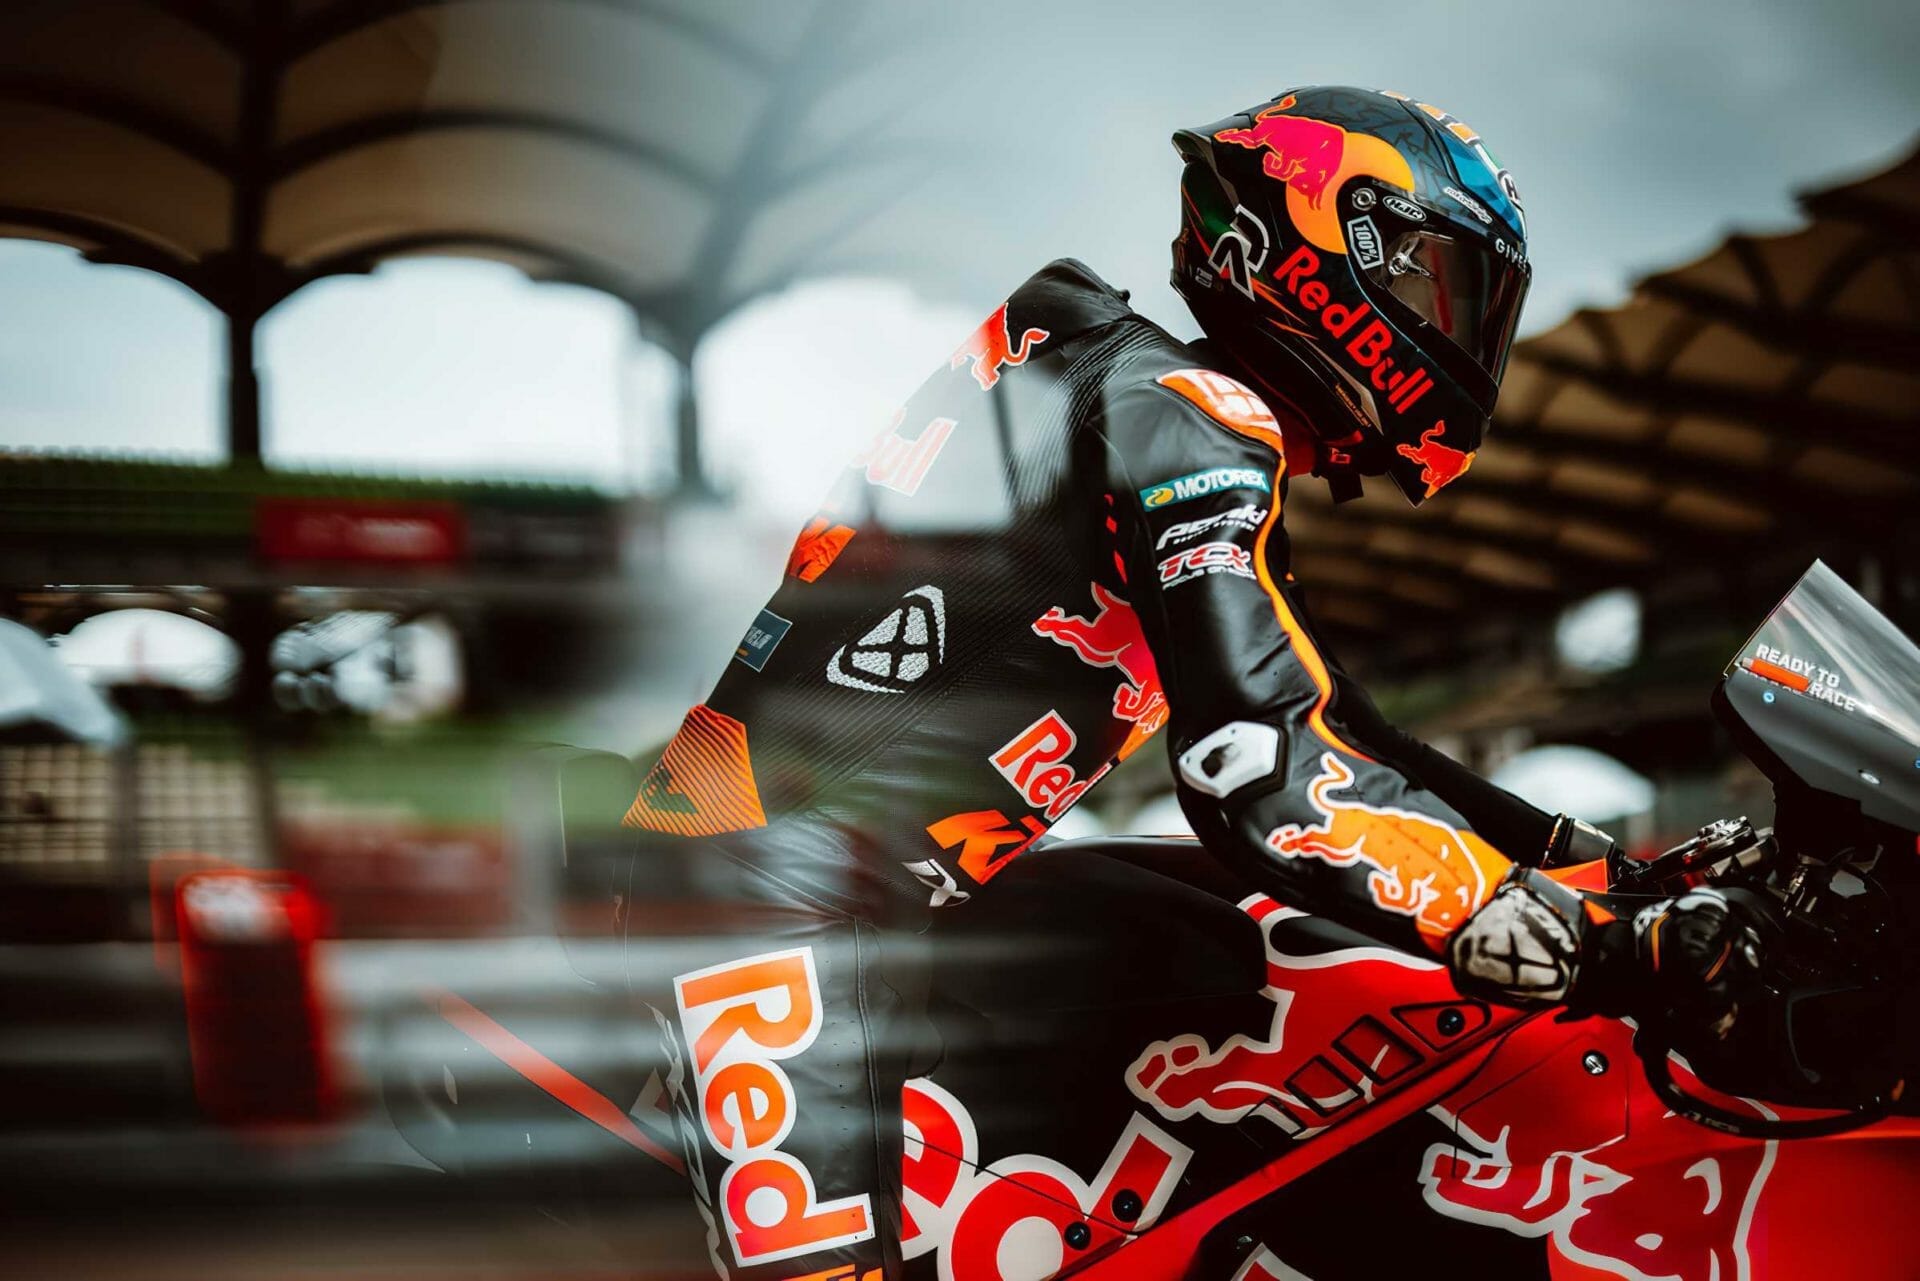 KTM plant eine besondere MotoGP Saison mit euch
- auch in der MOTORRAD NACHRICHTEN APP